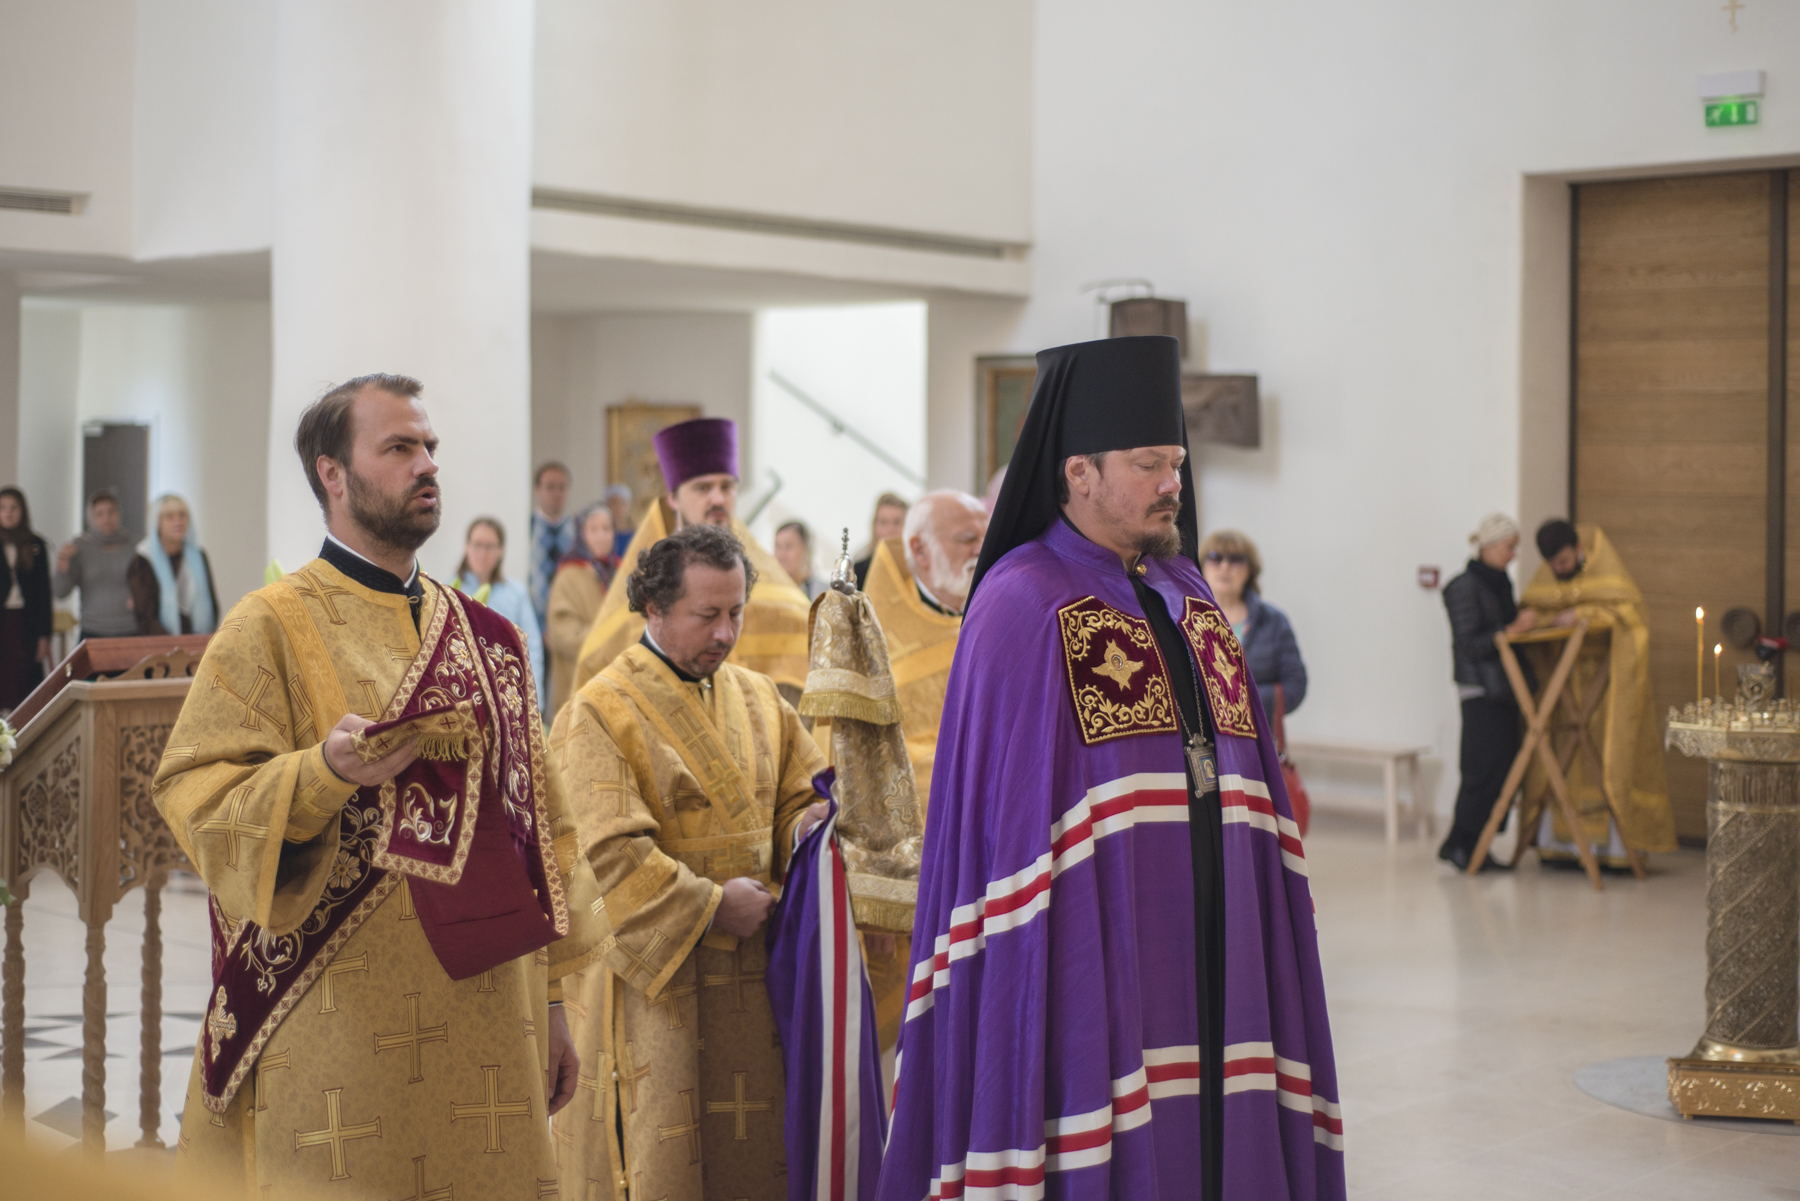 Les festivités à l’occasion du septième anniversaire de l’ordination épiscopale du Mgr Nestor